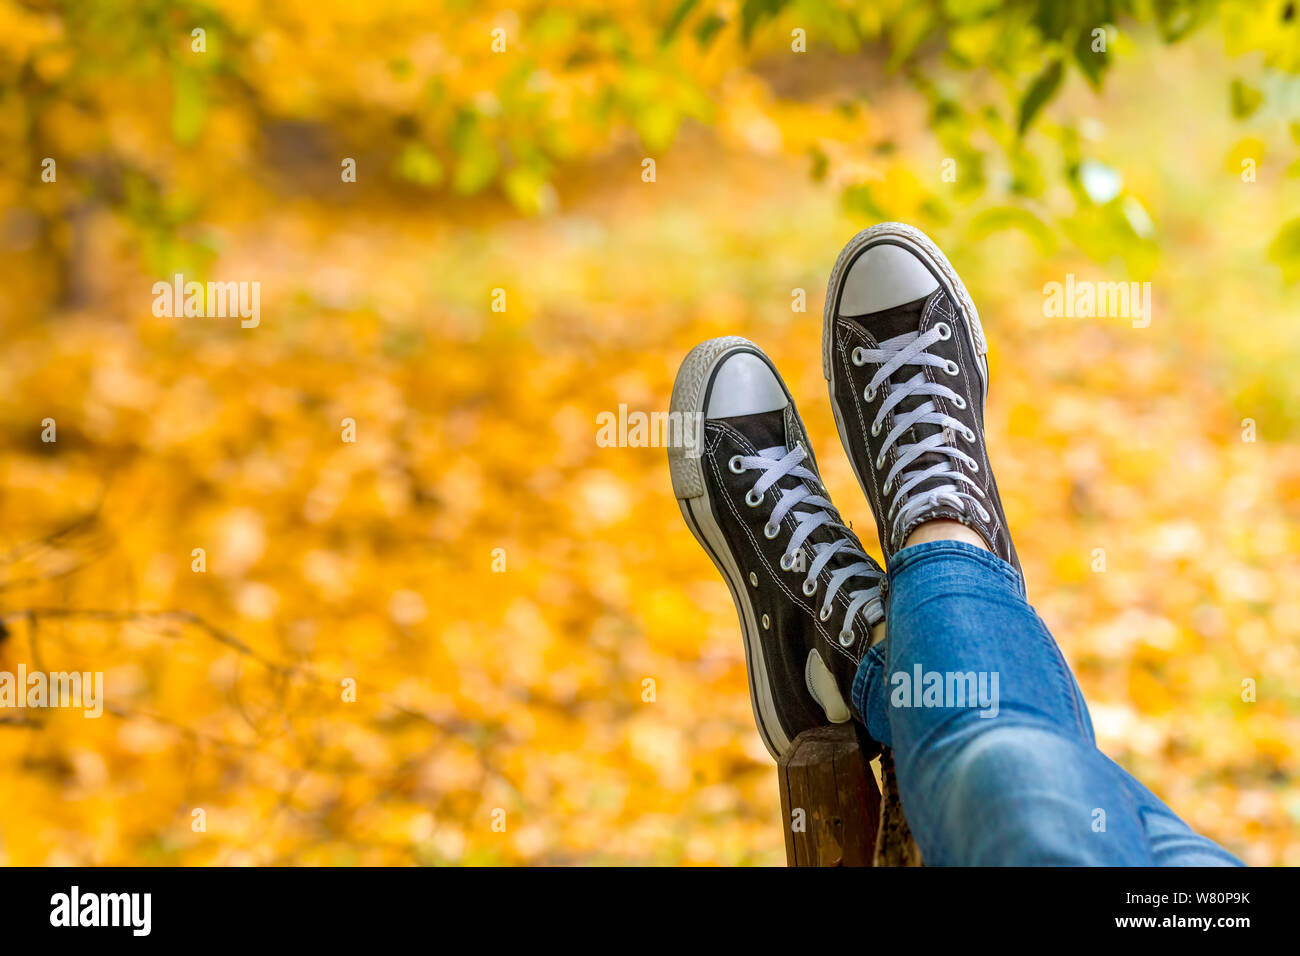 Entspannt Jugendmädchen Sneakers tragen liegt auf der Werkbank im Herbst park Nahaufnahme. Fokus auf Turnschuhe. Stockfoto